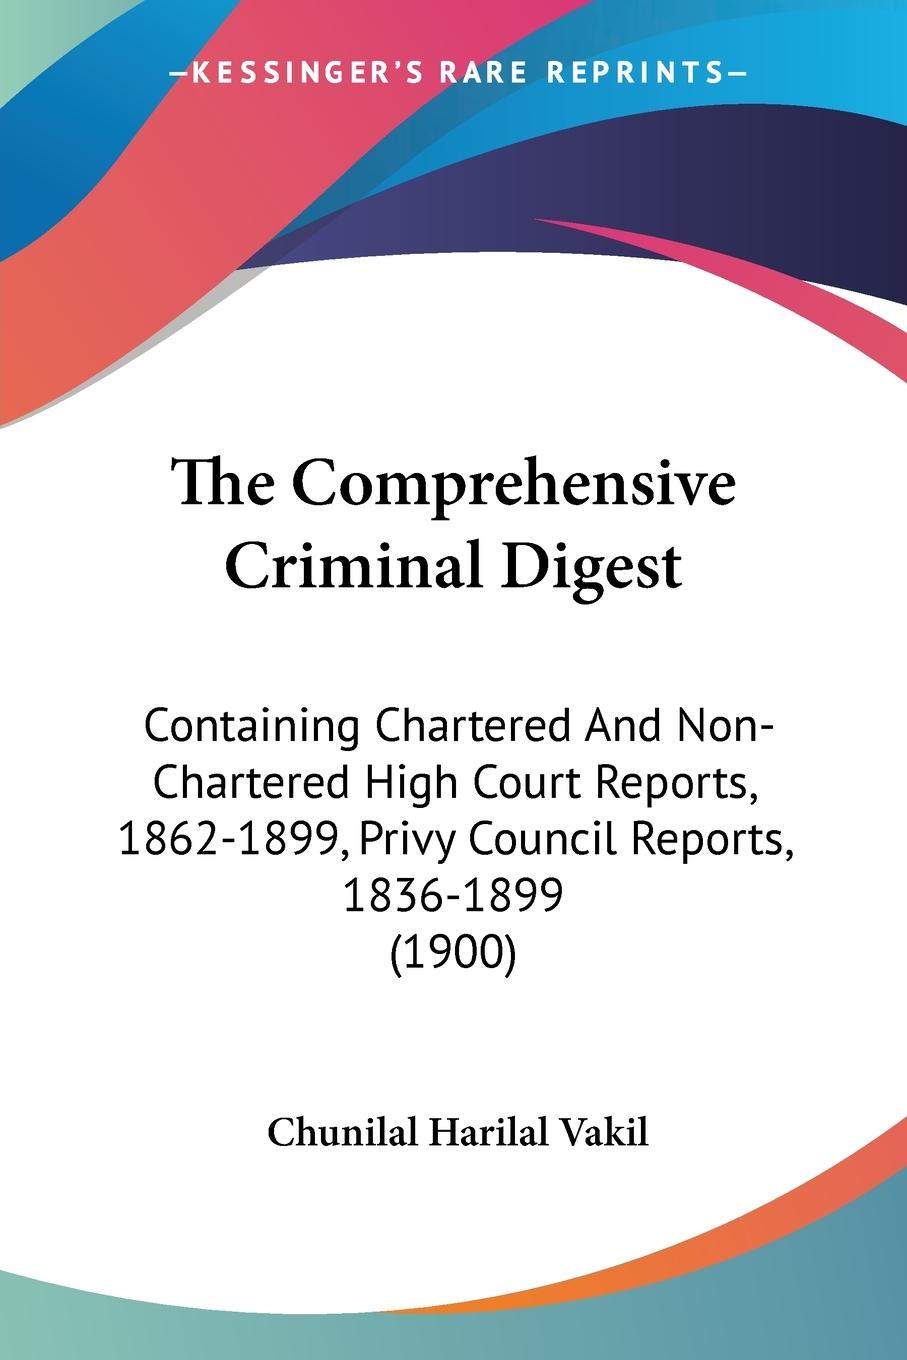 The Comprehensive Criminal Digest - Vakil, Chunilal Harilal